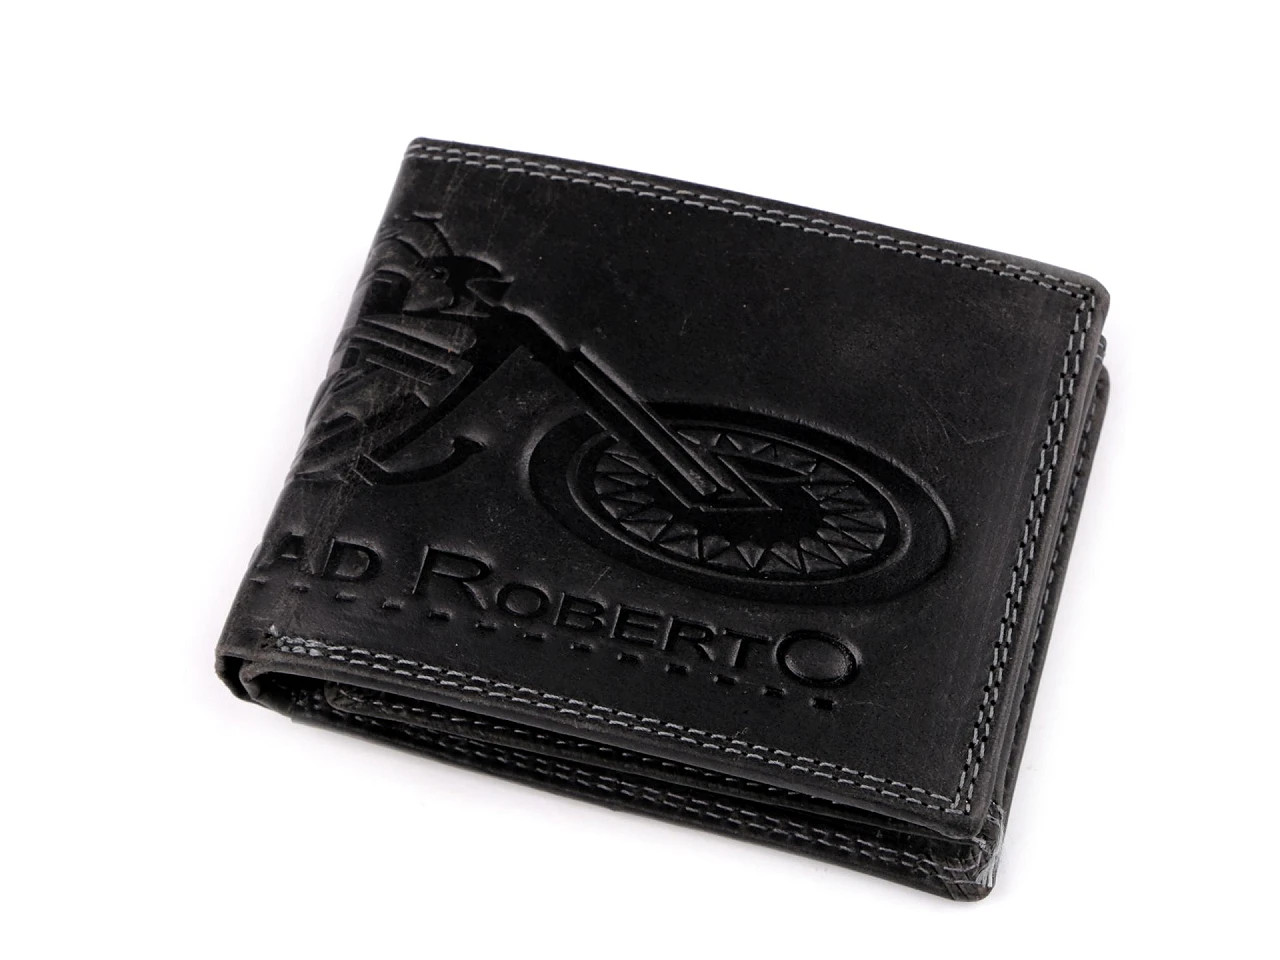 Pánská peněženka kožená pro myslivce, rybáře, motorkáře 9,5x12 cm, barva 26 černá motorka